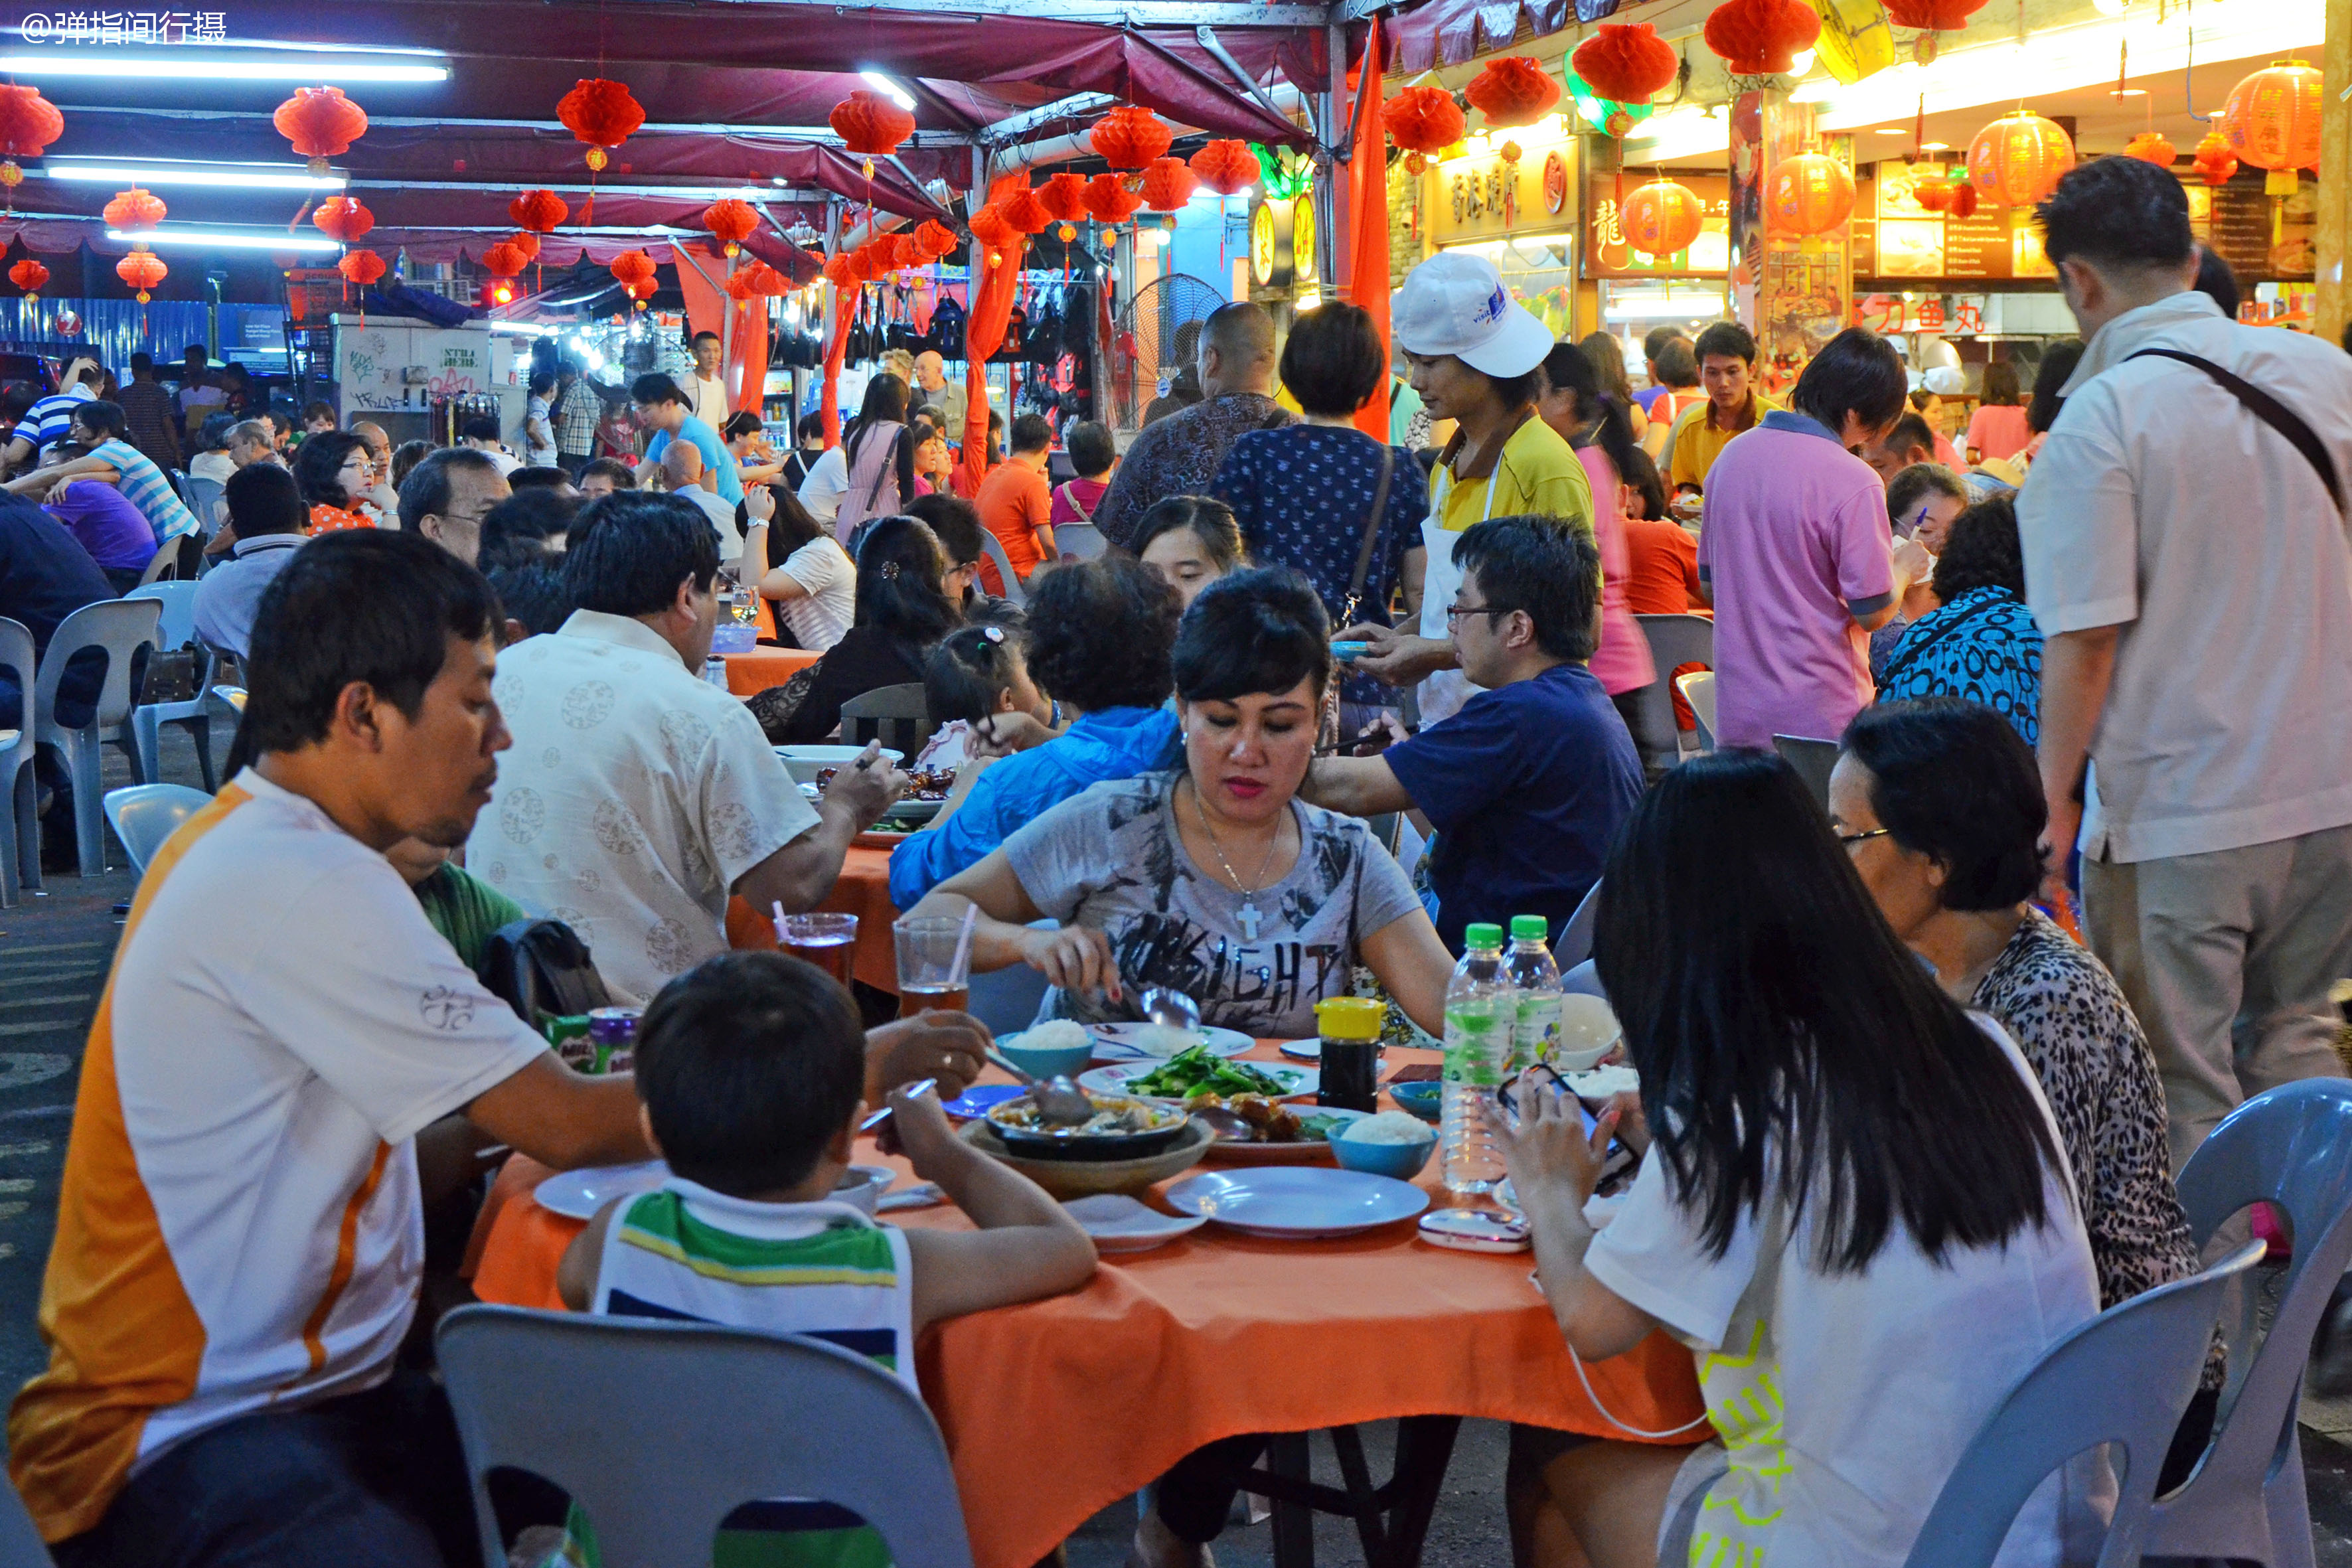 原创 马来西亚最火的夜市,春节美食大排档人满为患,感觉像在广州街头